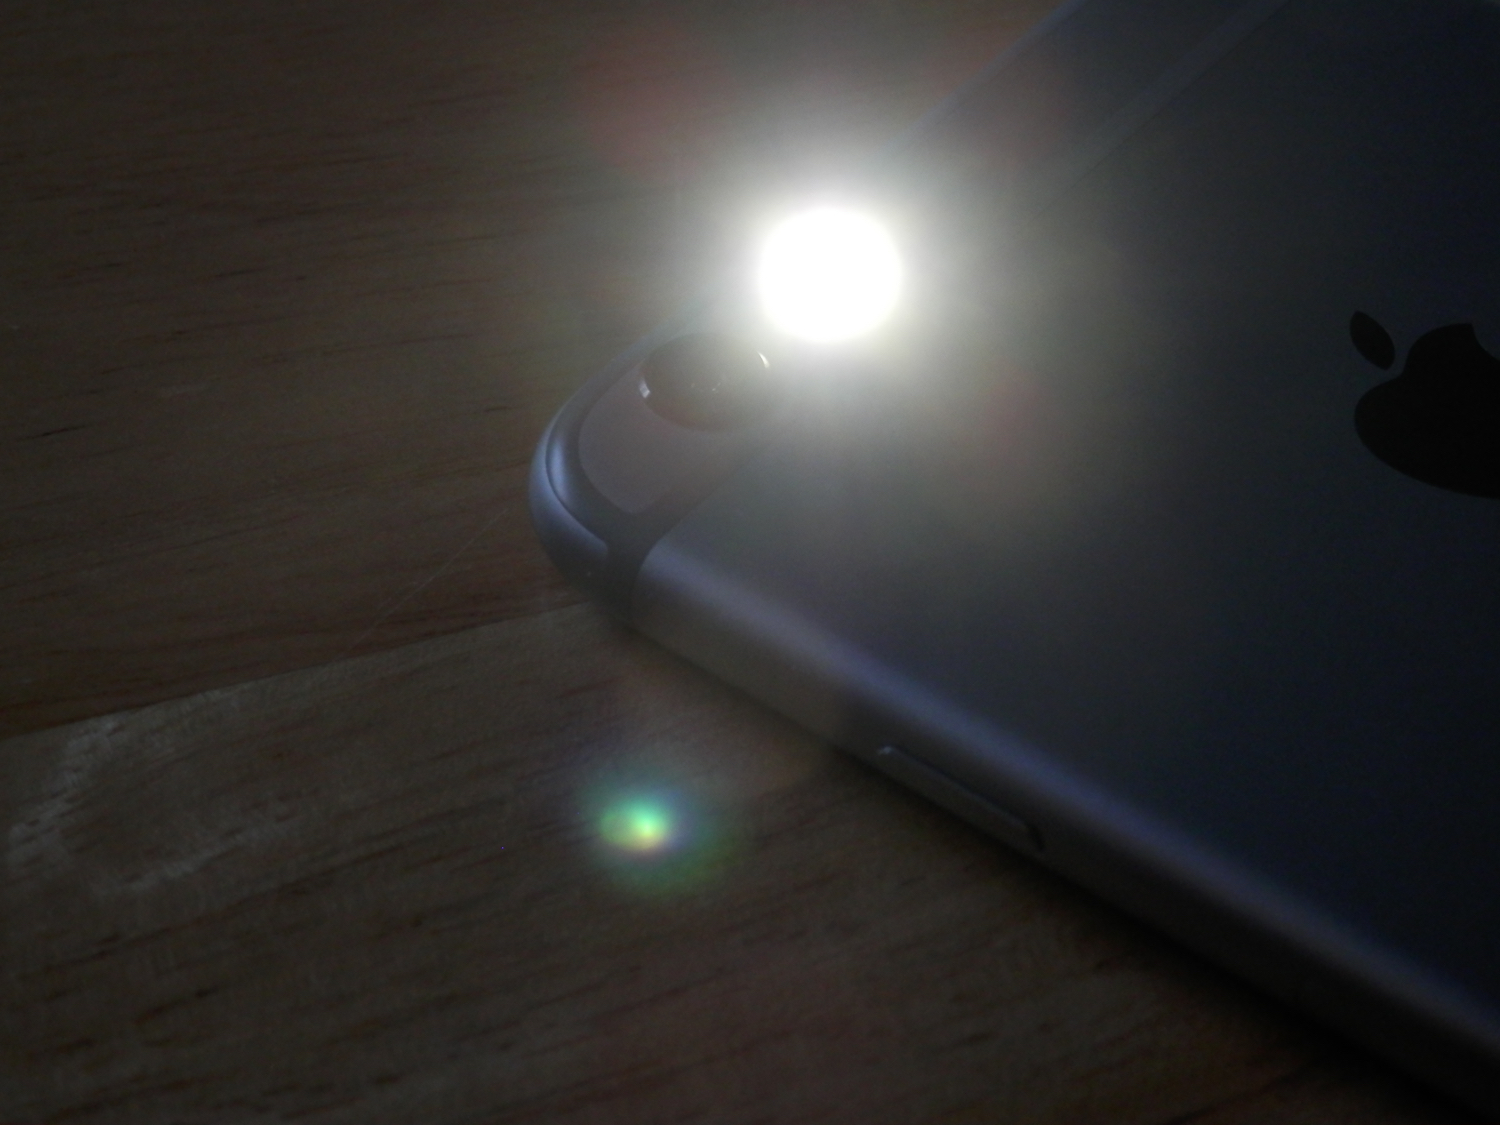 Problèmes d'appareil photo iPhone - flash bloqué